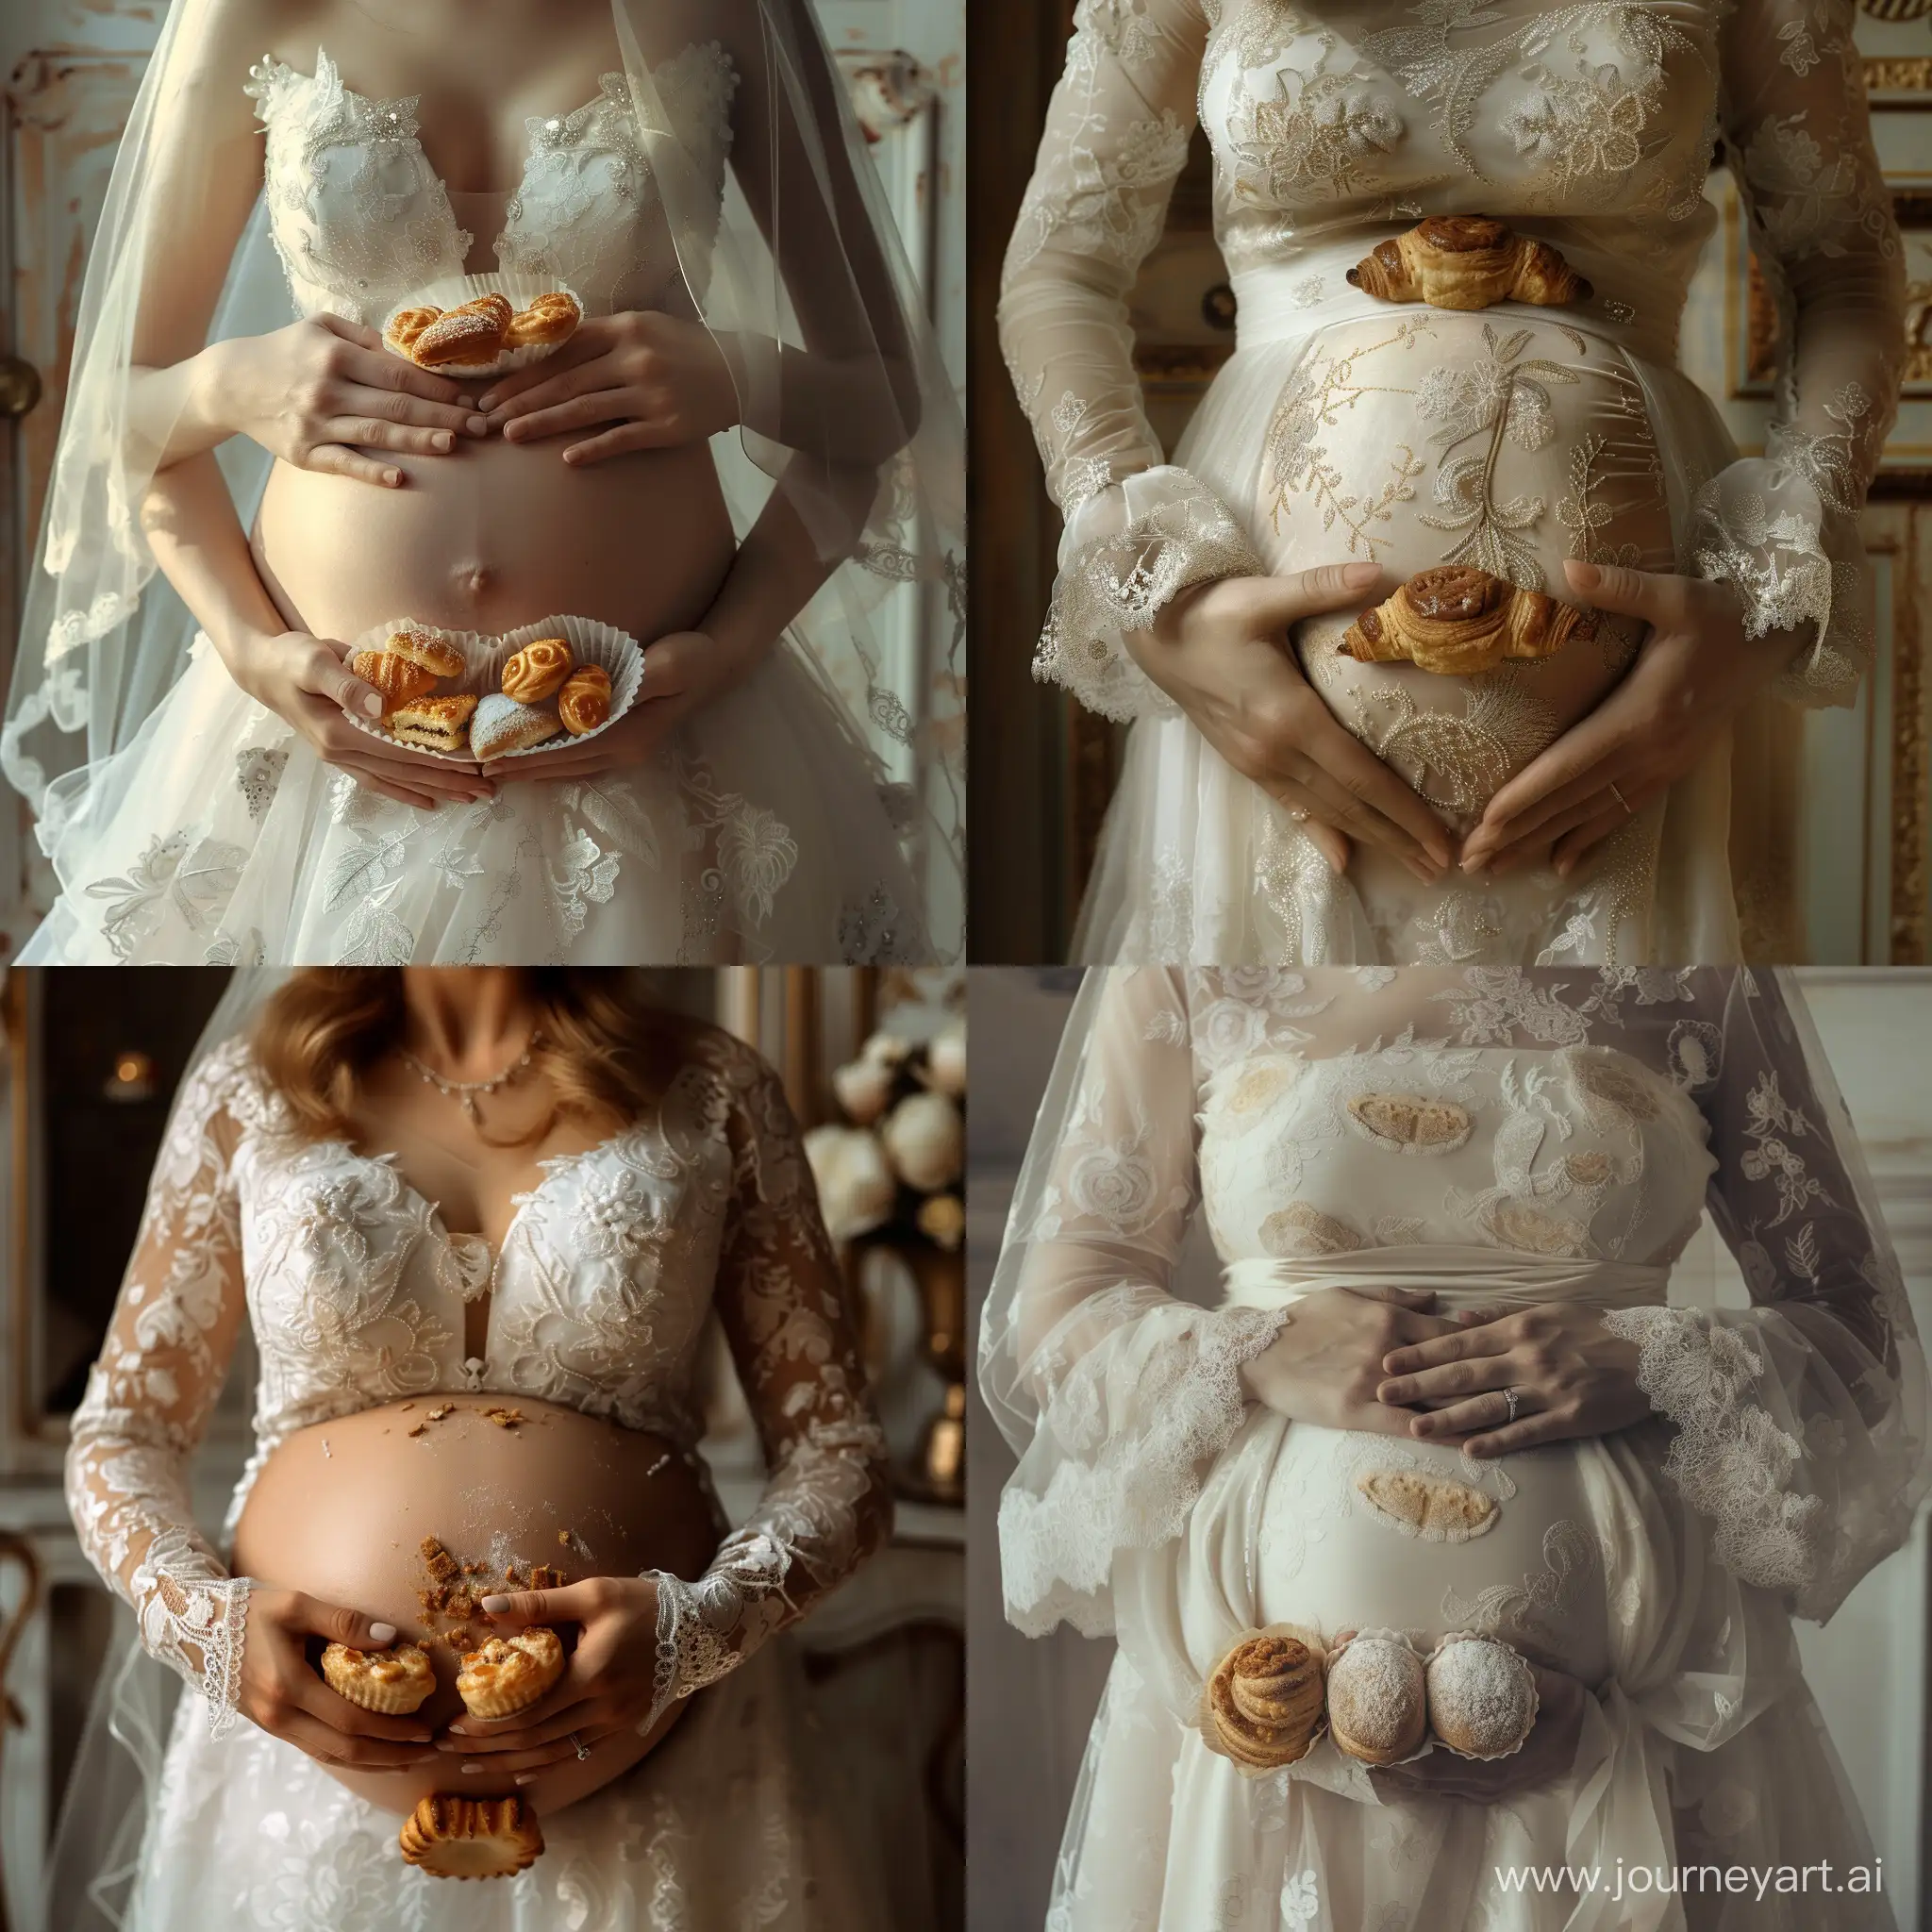 Жена в свадебном платье есть пирожные, у нее выпирает живот, 4К, ульта HD, реализм